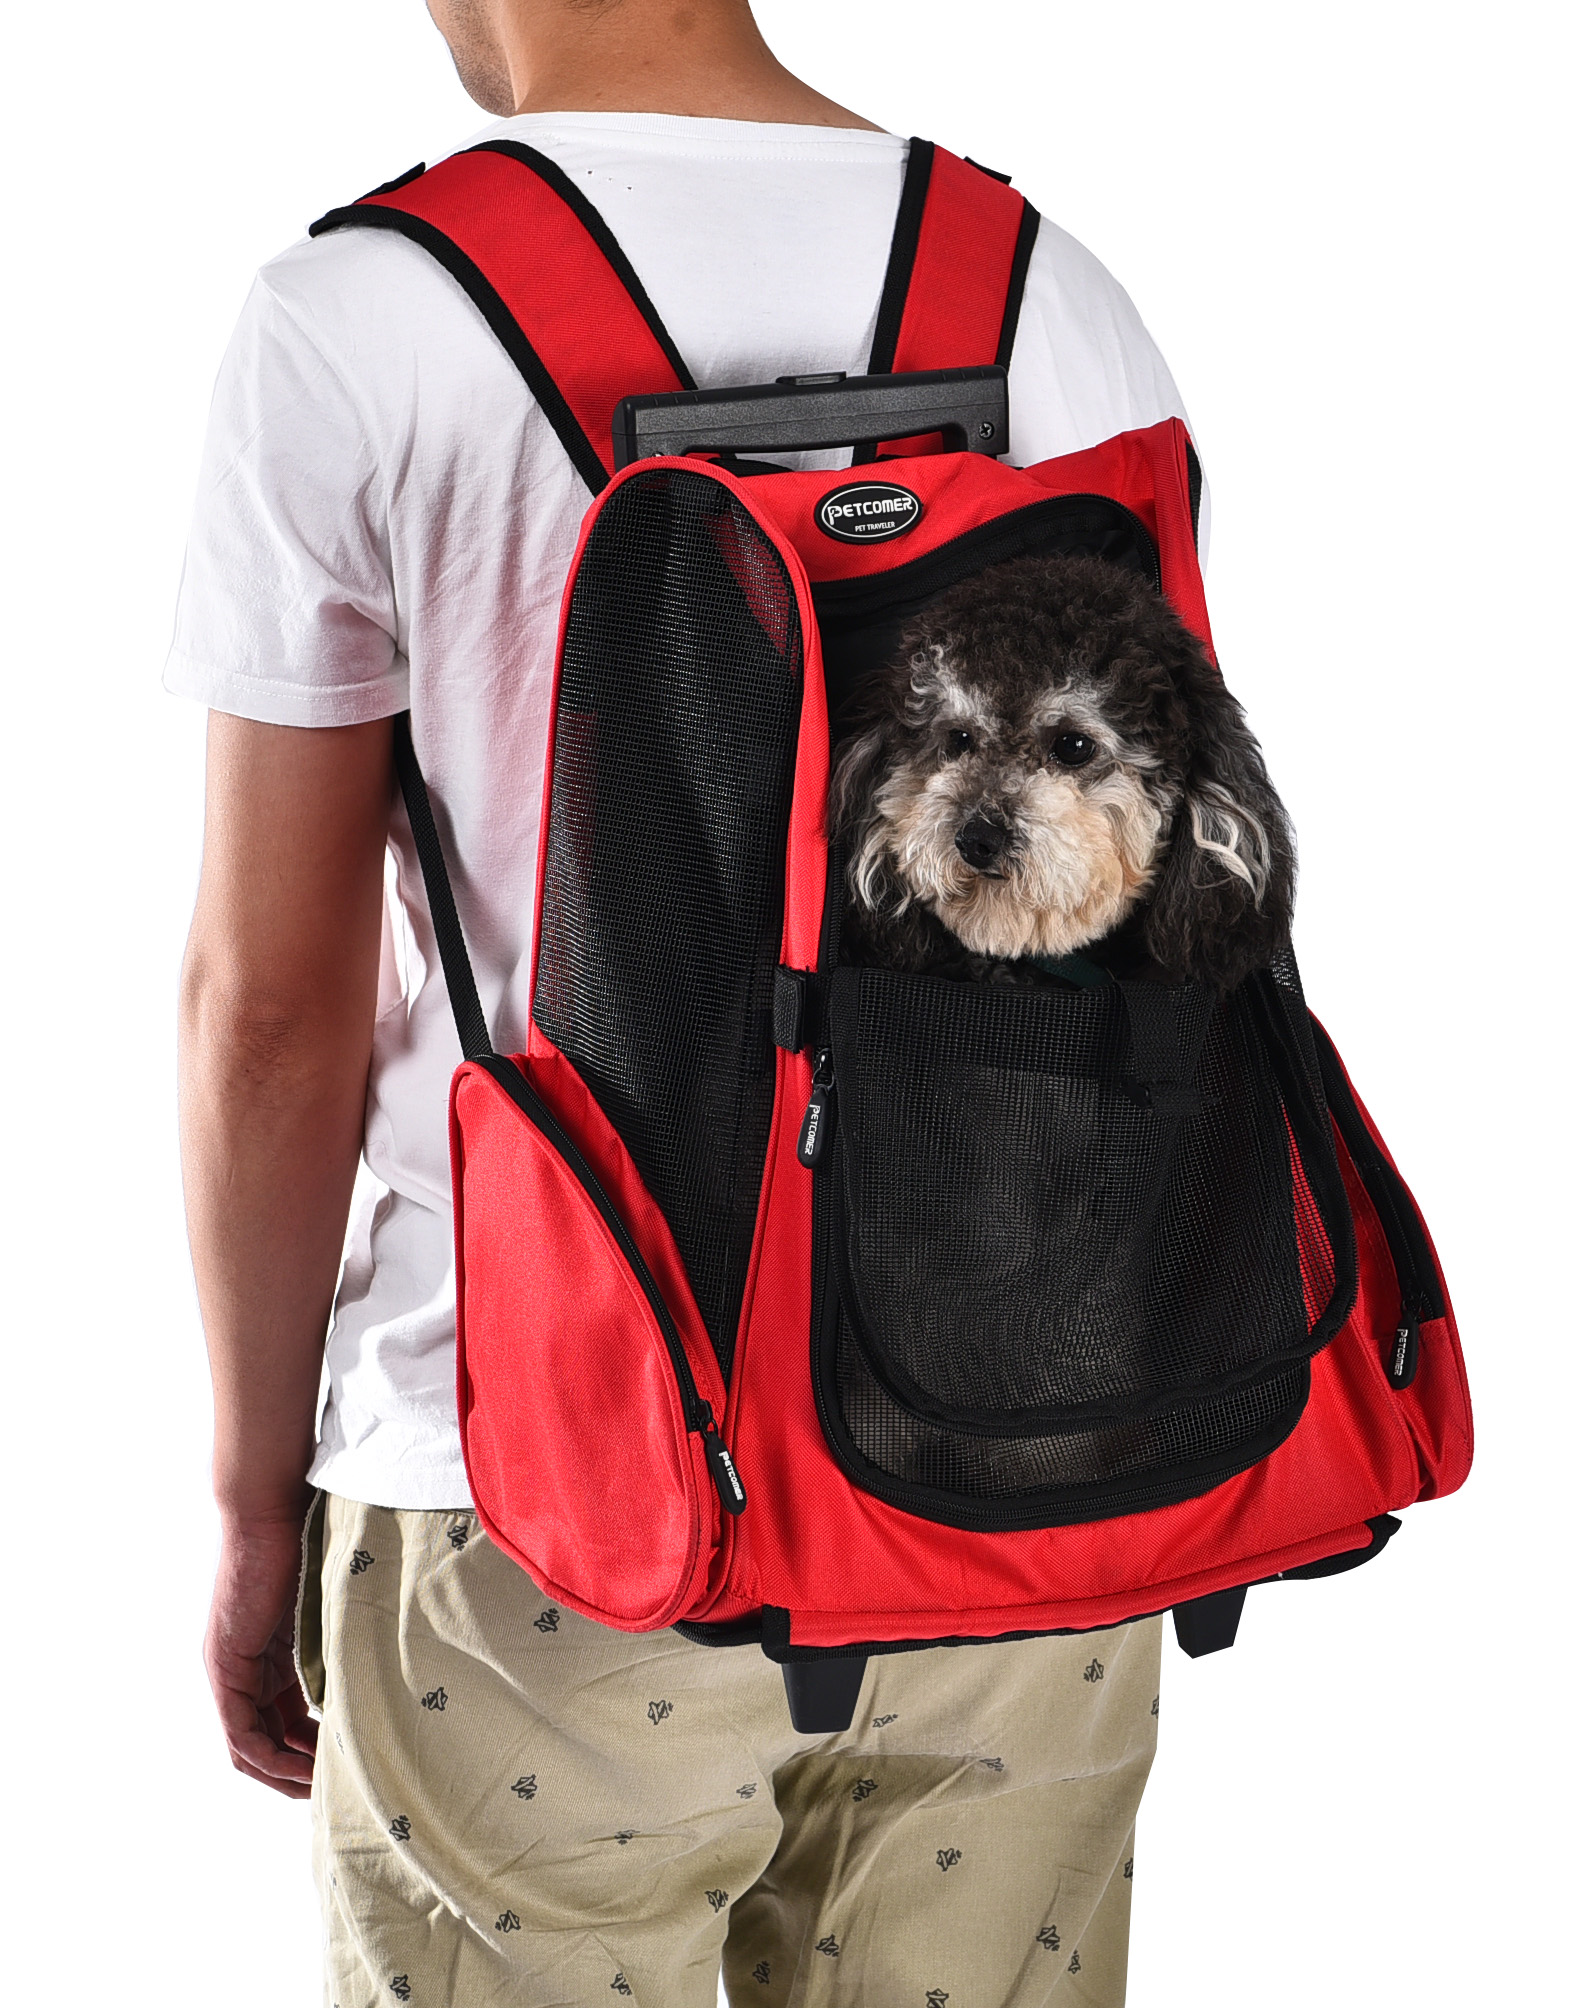 Backpacks Luxury Dog Carrier Wheels Backpack Pet Carrier Travel Pet Dog Carrier Bag